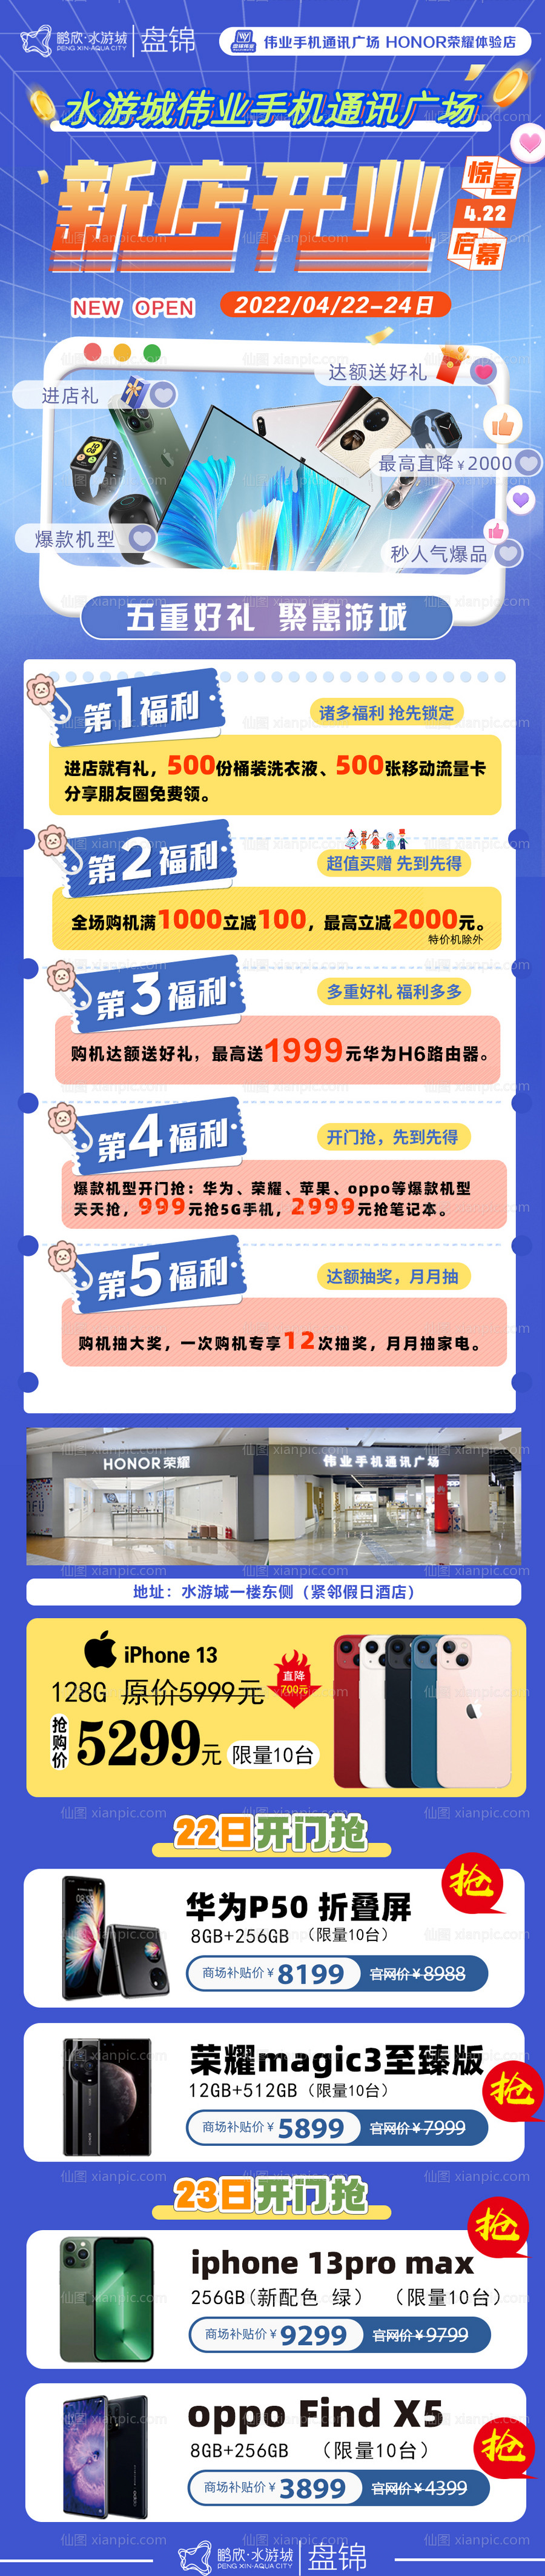 素材乐-新店开业海报推广宣传